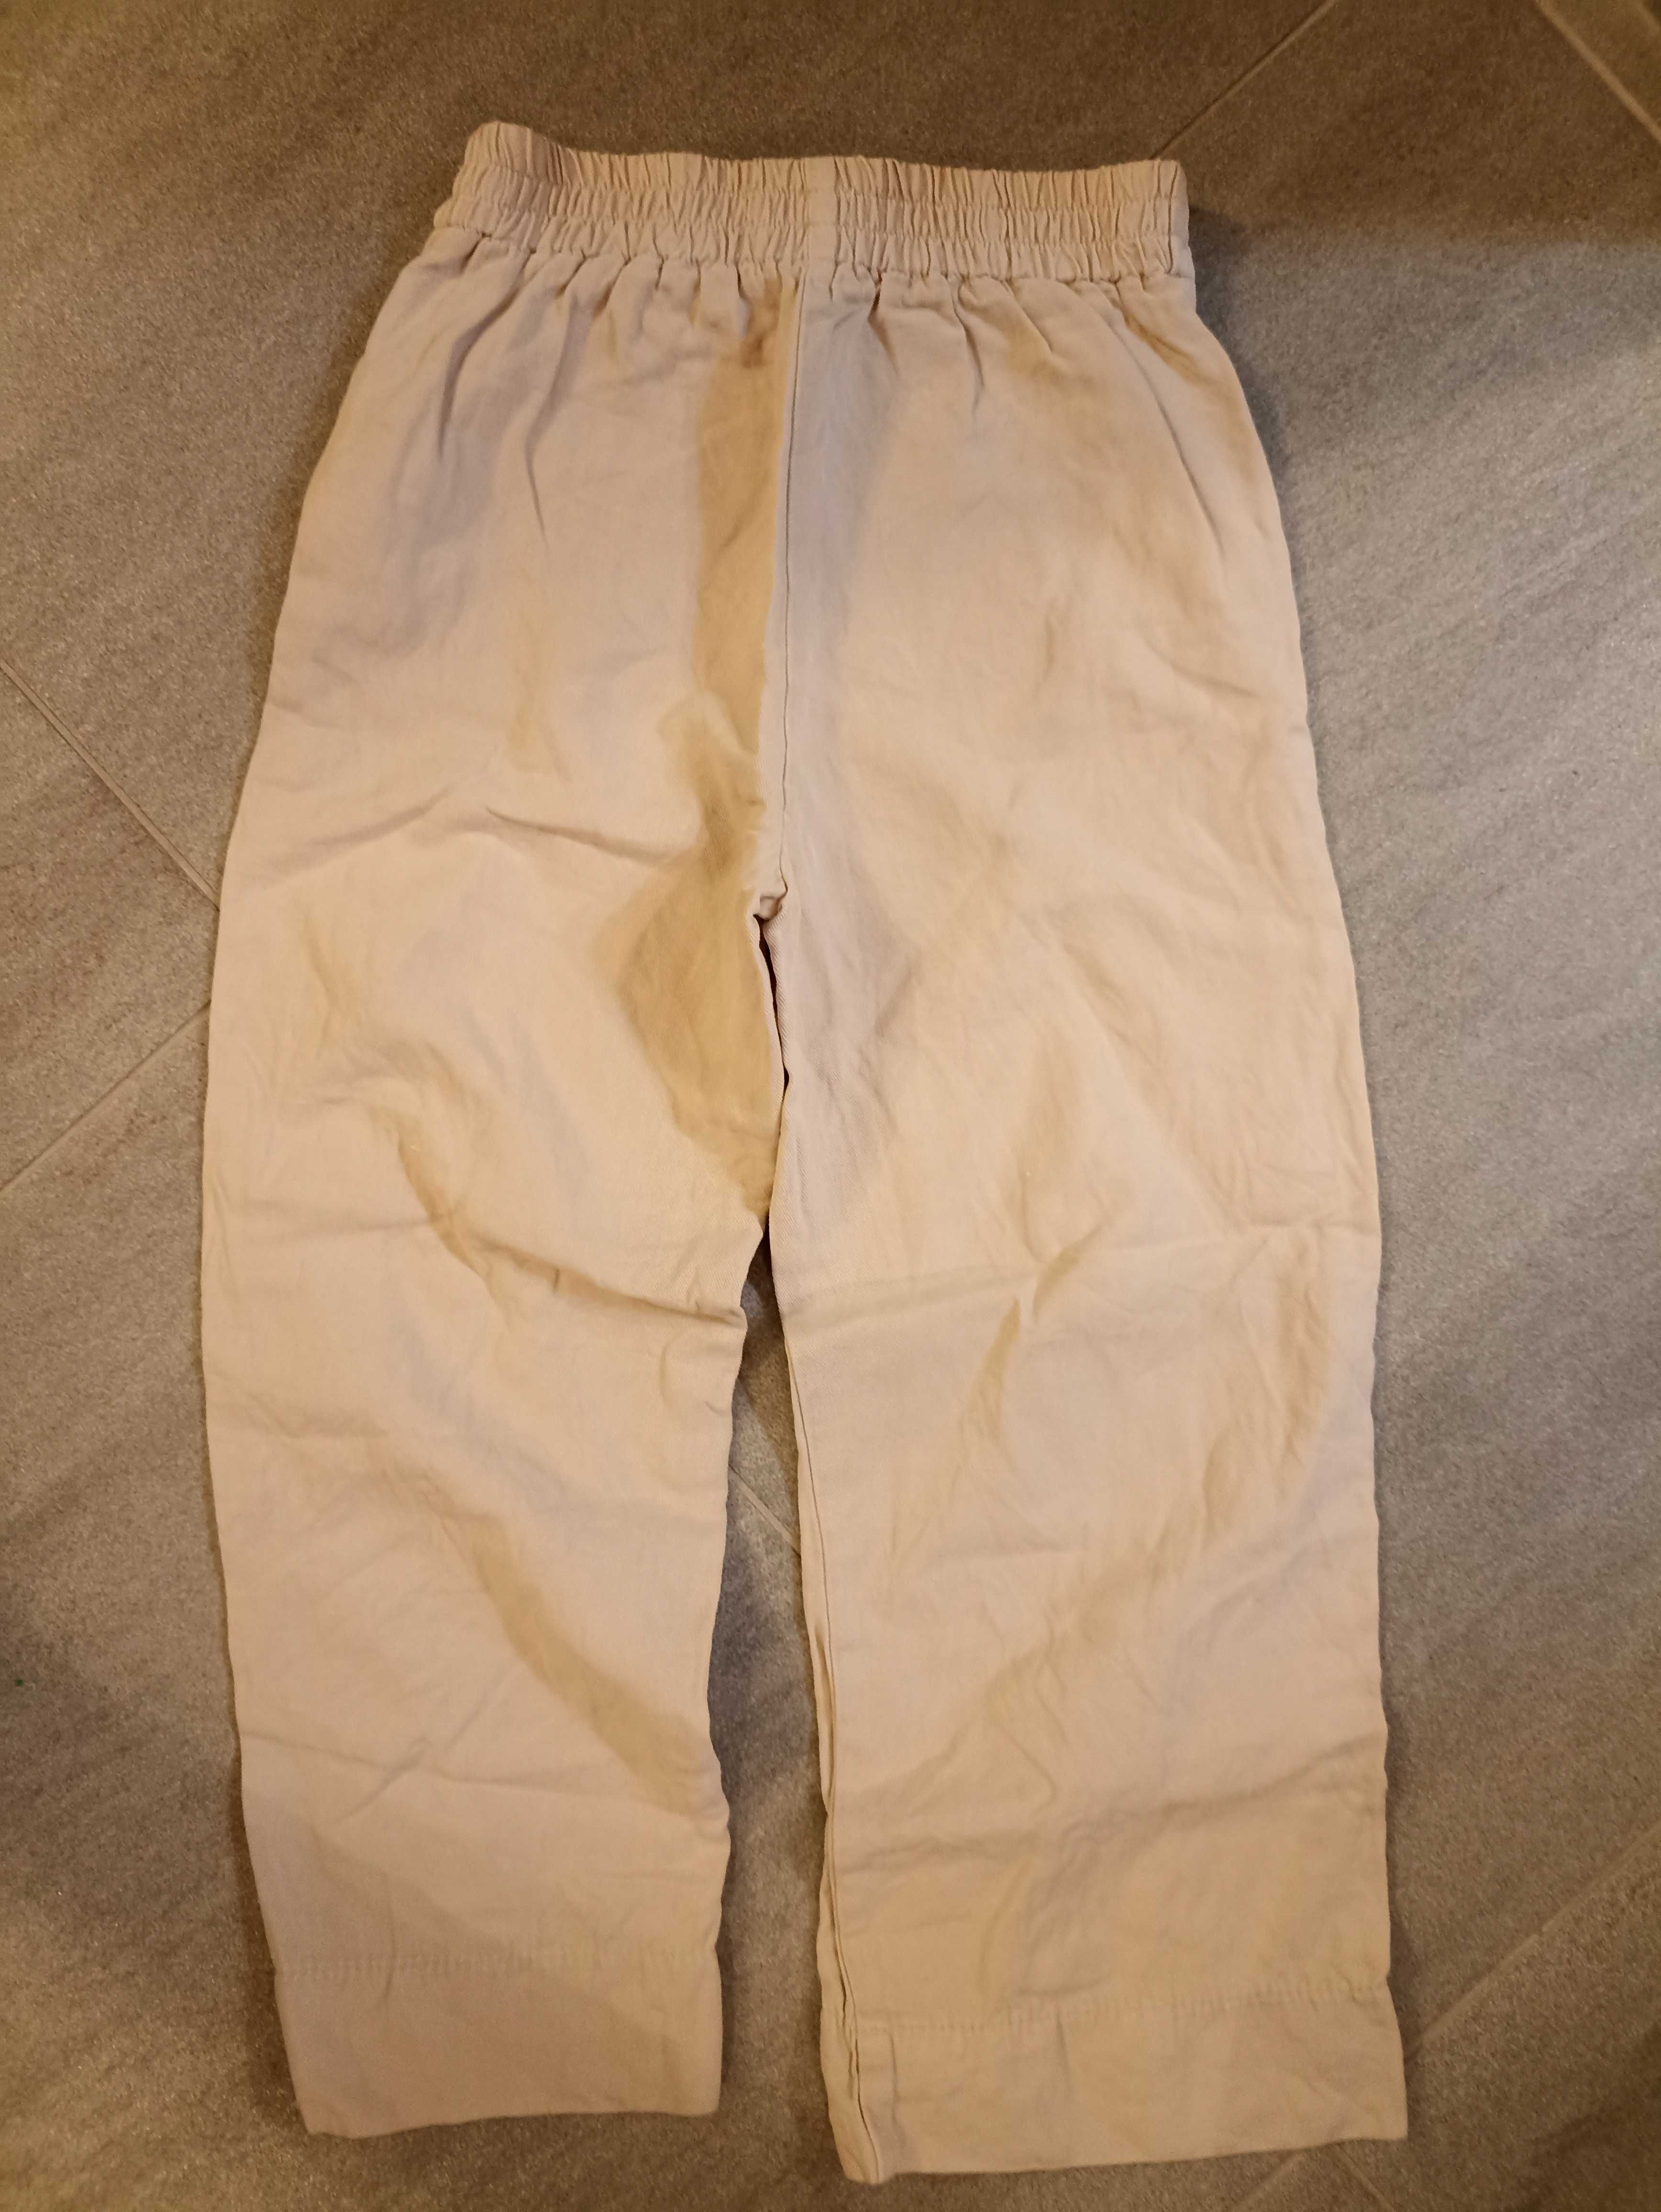 Pantaloni fetiţă ZARA, mărimea 140